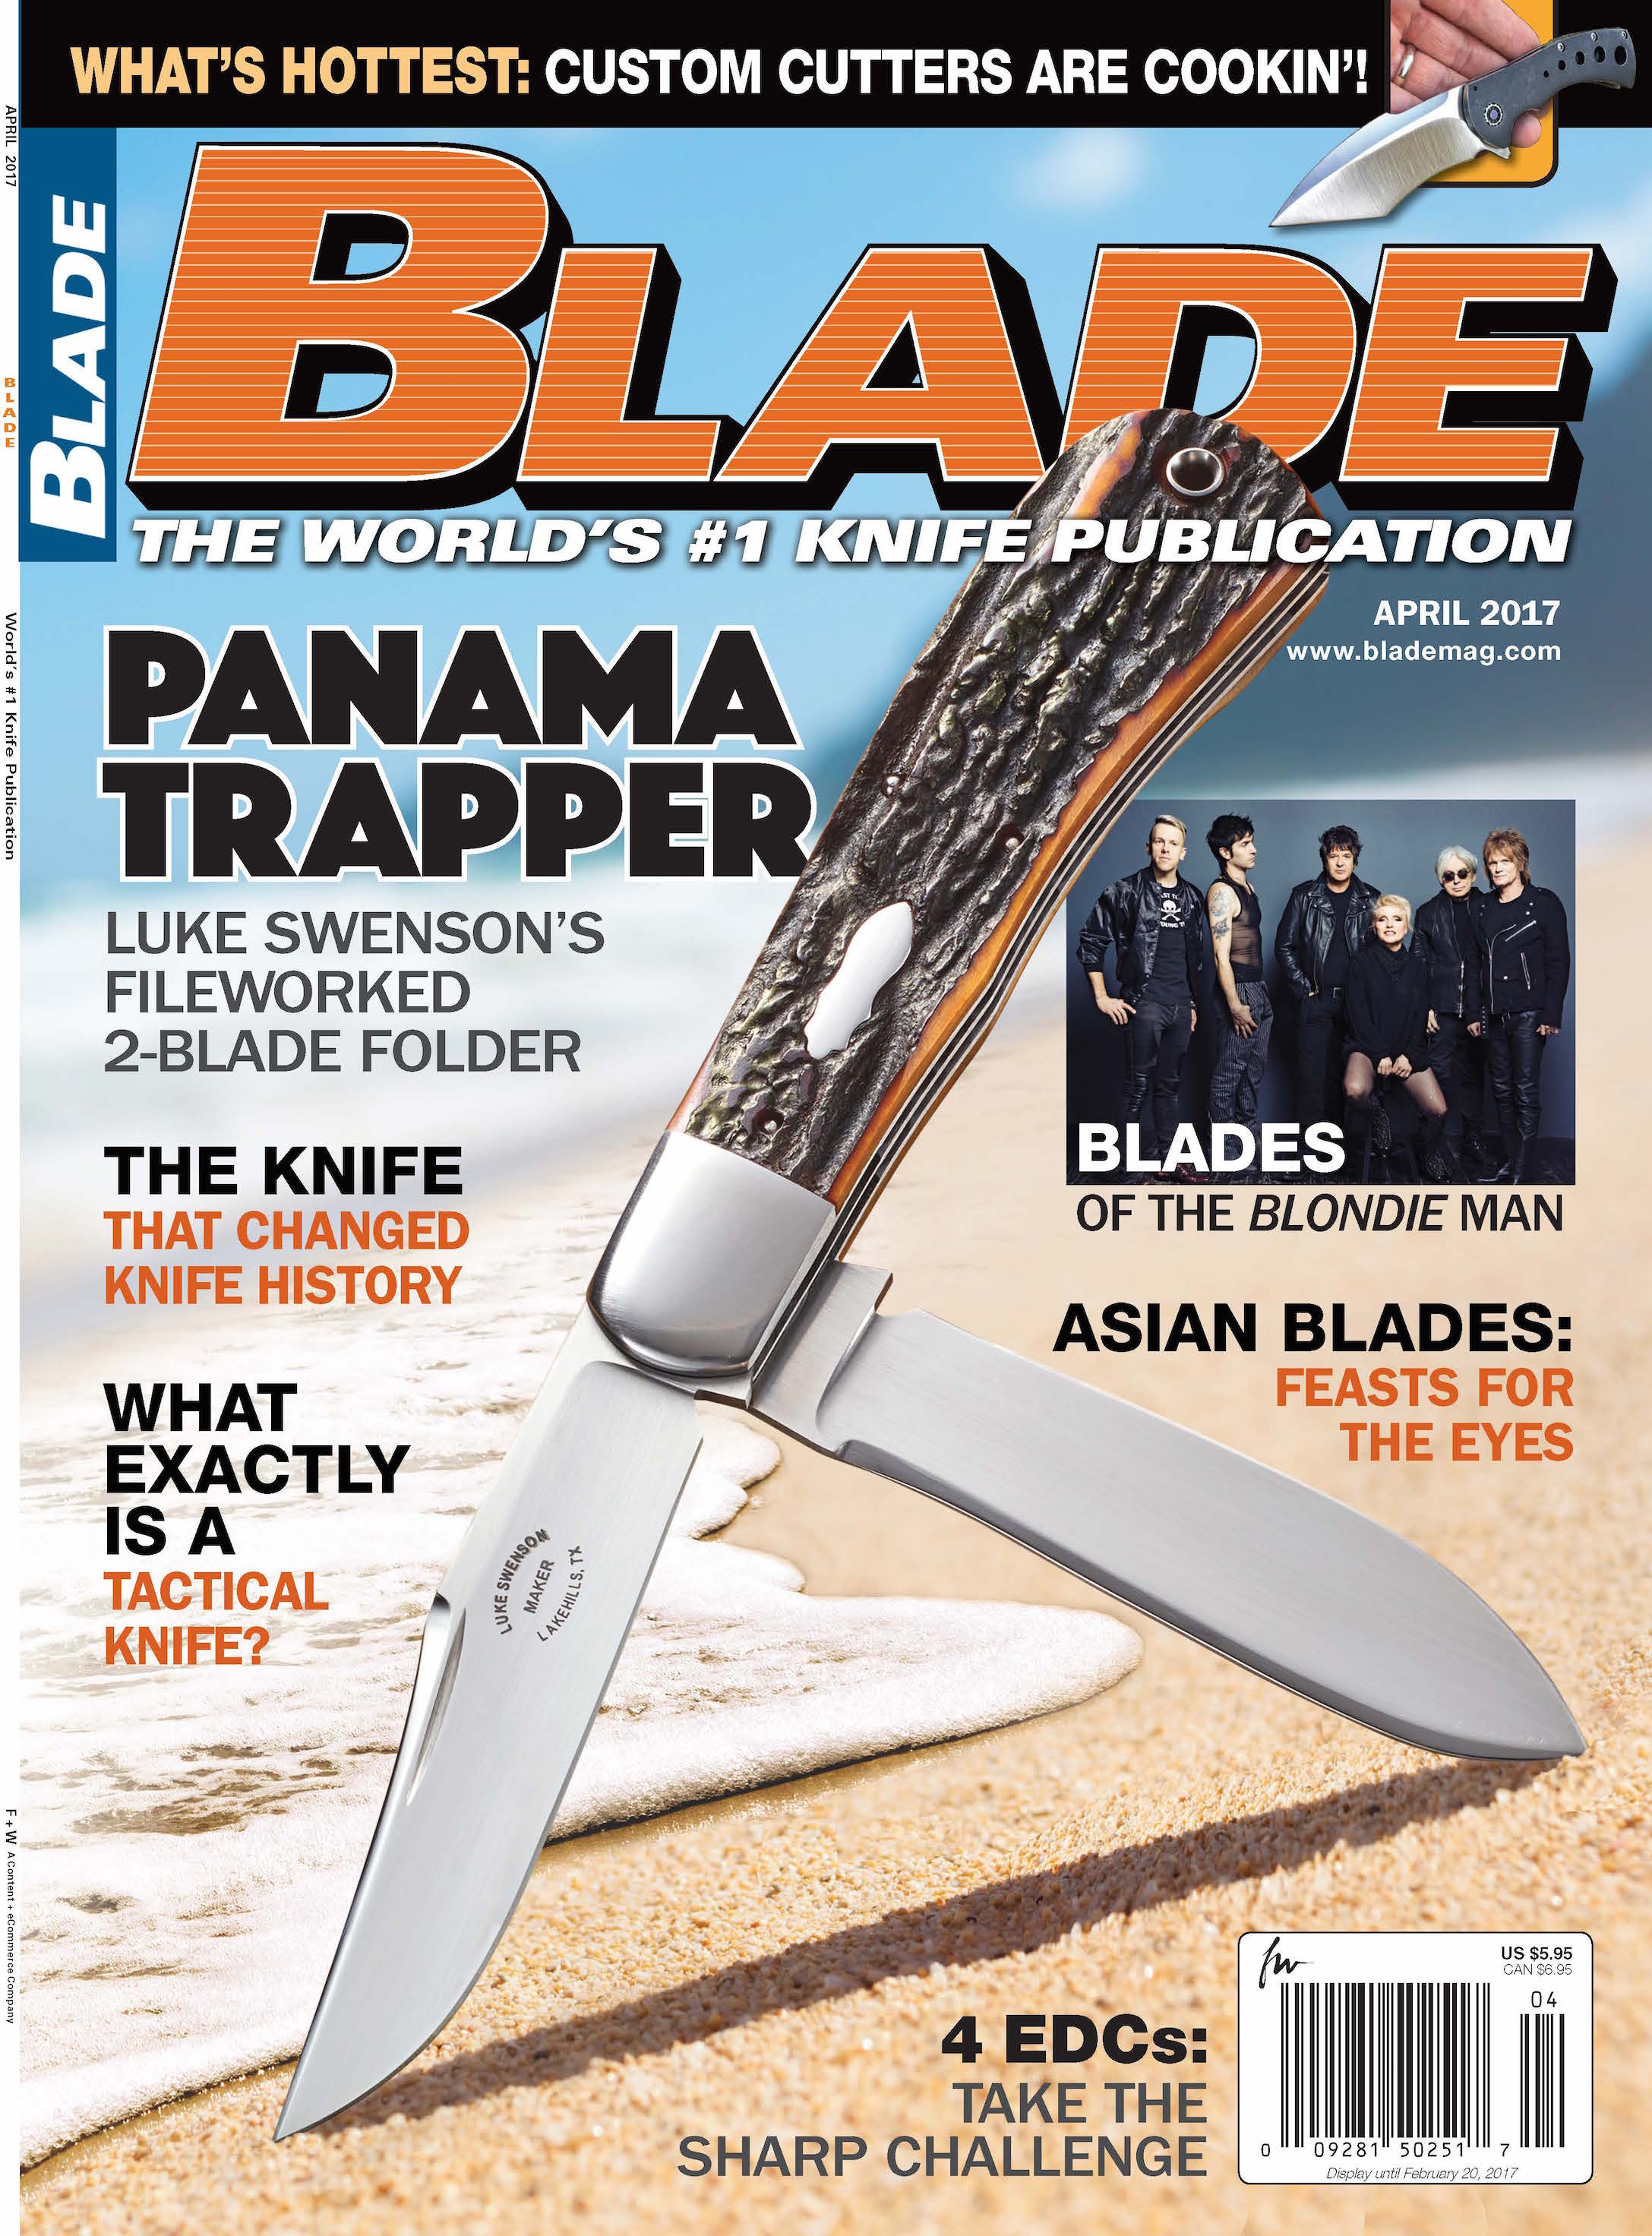 Blondie Man's Blades in BLADE.